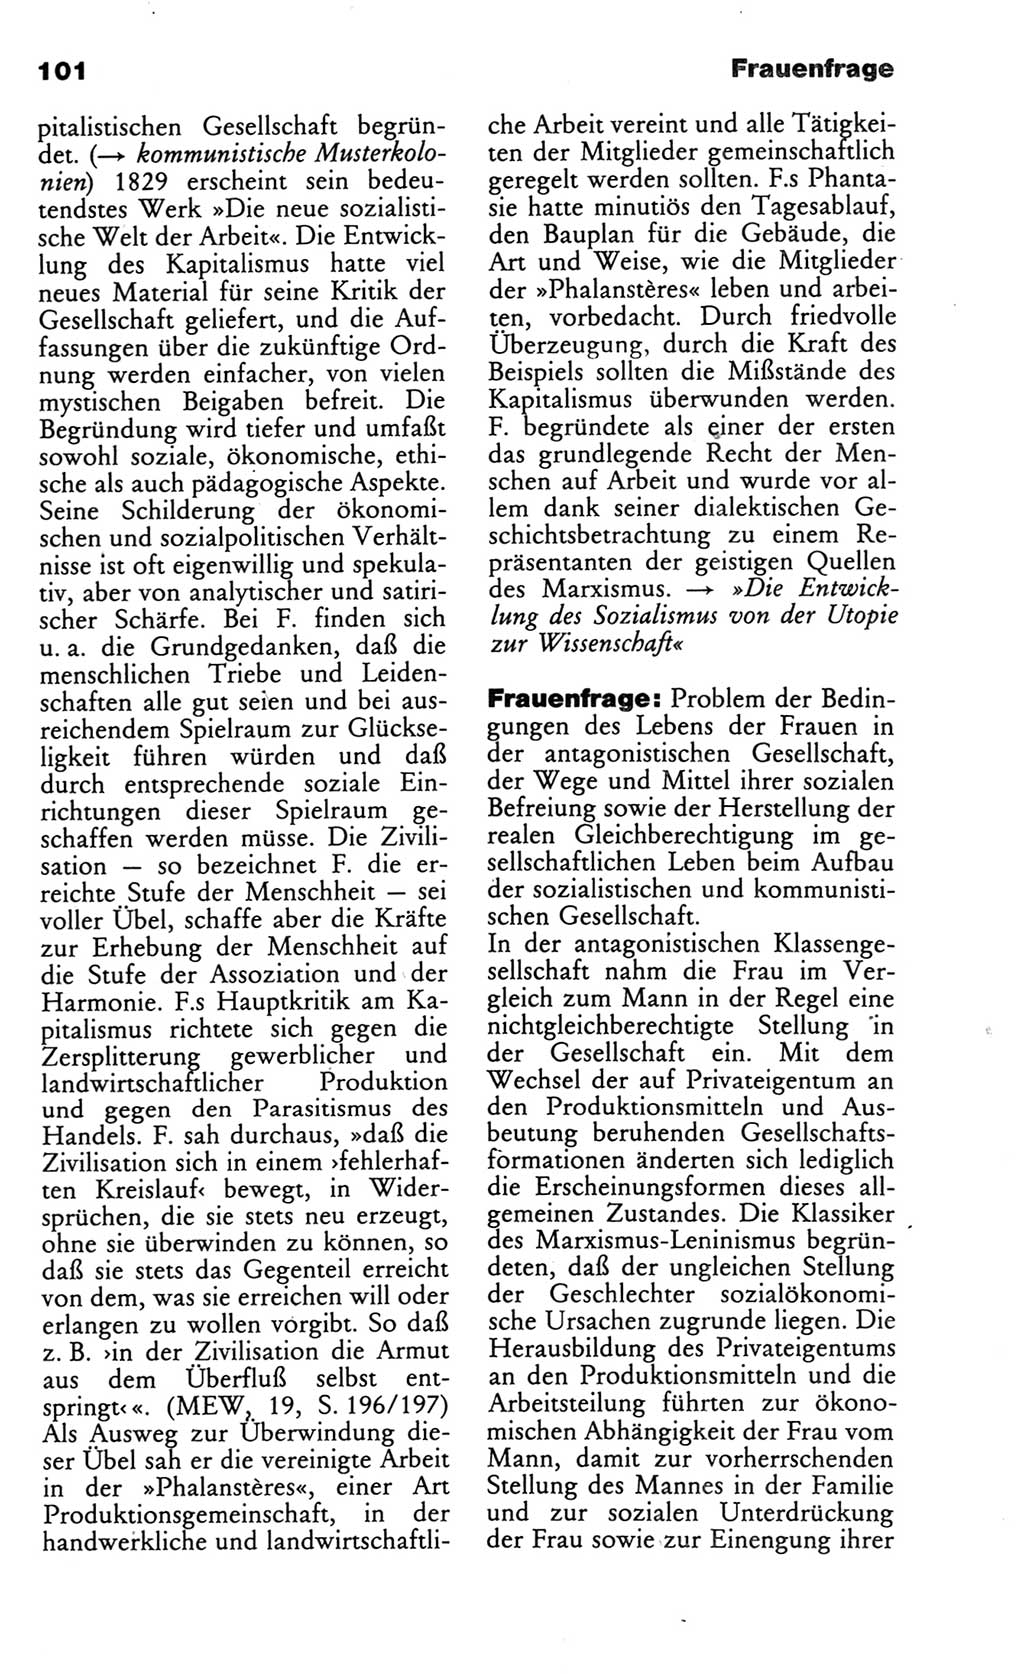 Wörterbuch des wissenschaftlichen Kommunismus [Deutsche Demokratische Republik (DDR)] 1986, Seite 101 (Wb. wiss. Komm. DDR 1986, S. 101)